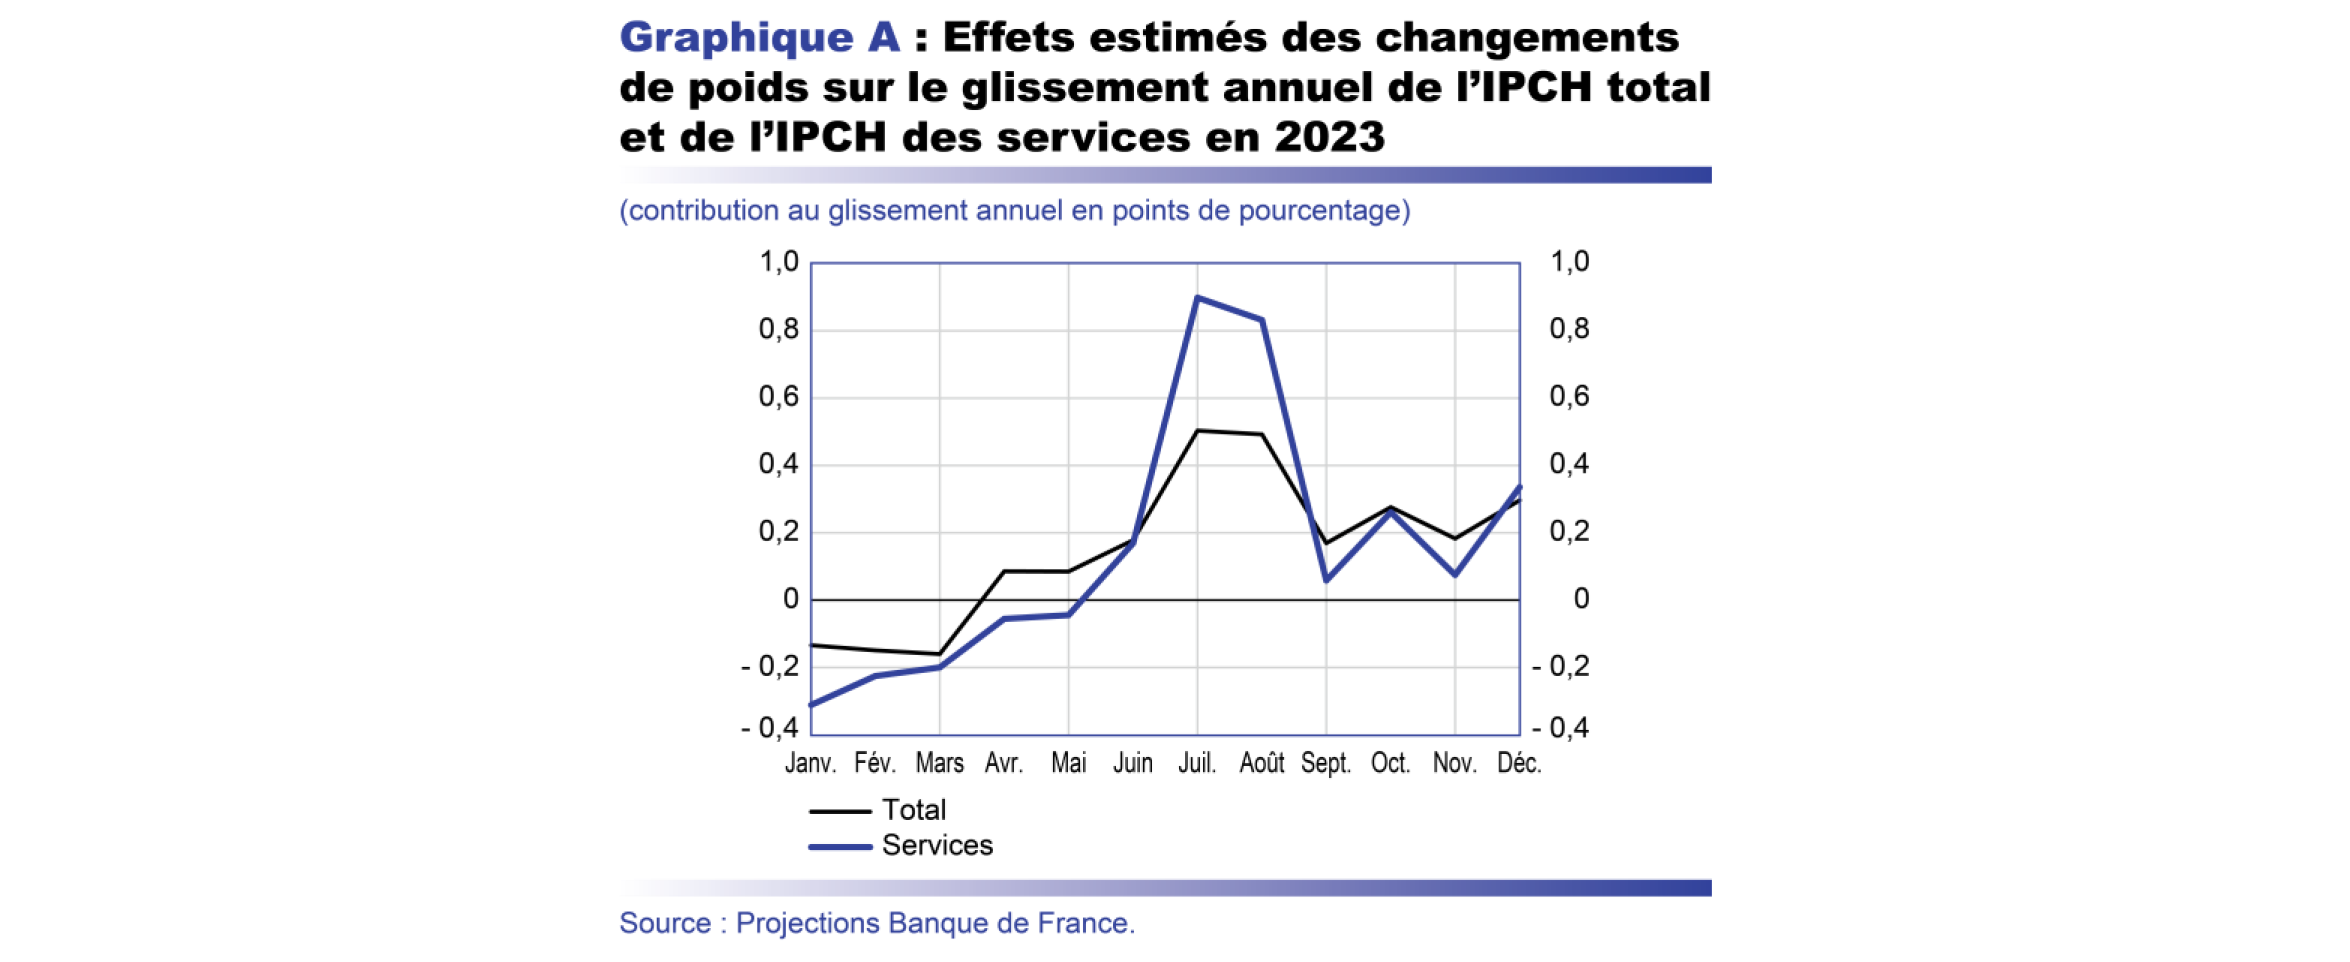 Projection macro - Effets estimés des changements de poids sur le glissement annuel de l'IPCH total et de l'IPCH des services en 2023